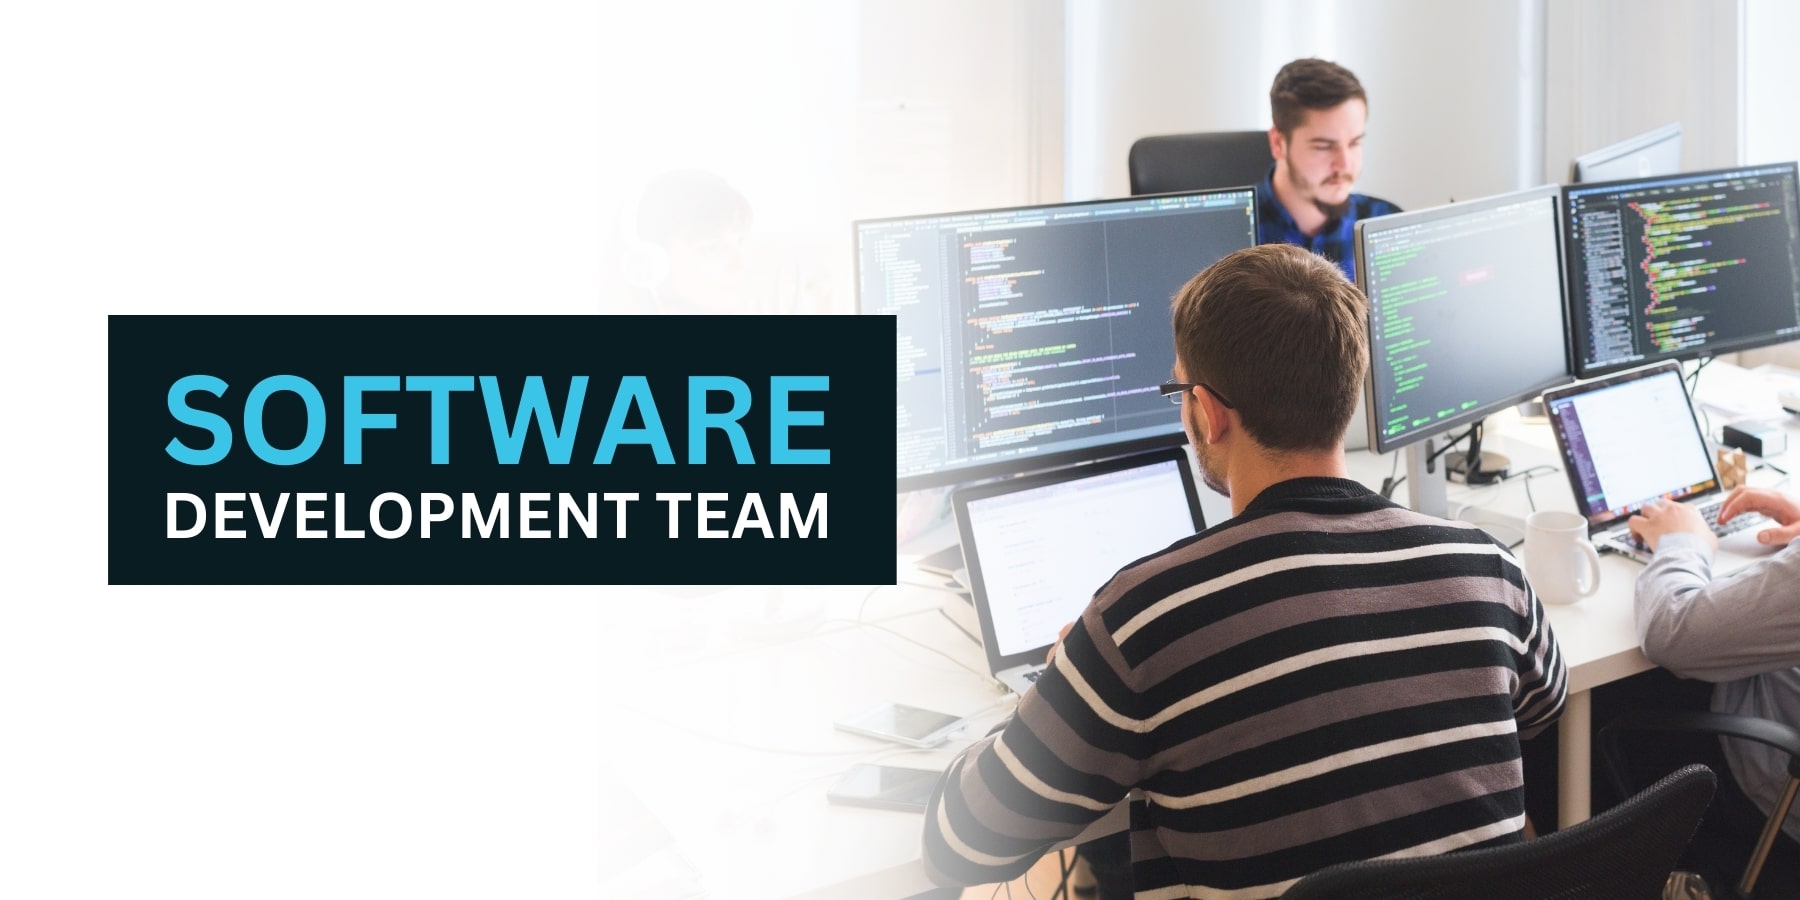 Software Development Team